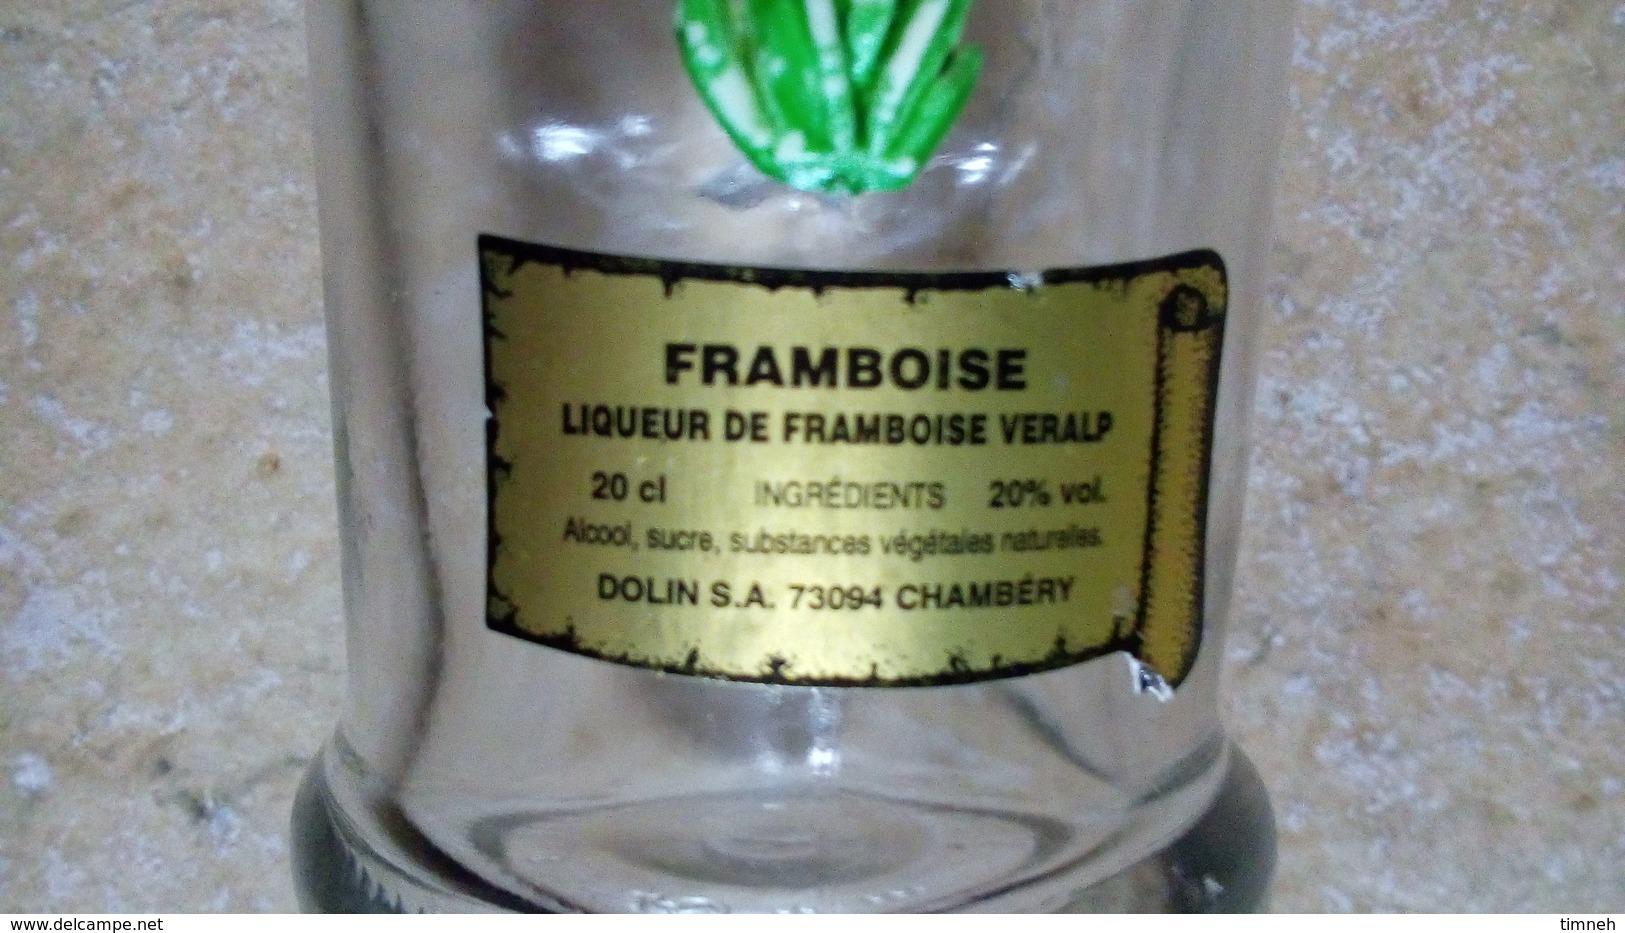 LIQUEUR FRAMBOISE VERALP - PETITE (20cl) BOUTEILLE VERRE - FLEUR GENTIANE Deco Plastique -DOLIN CHAMBERY - Alcoolici